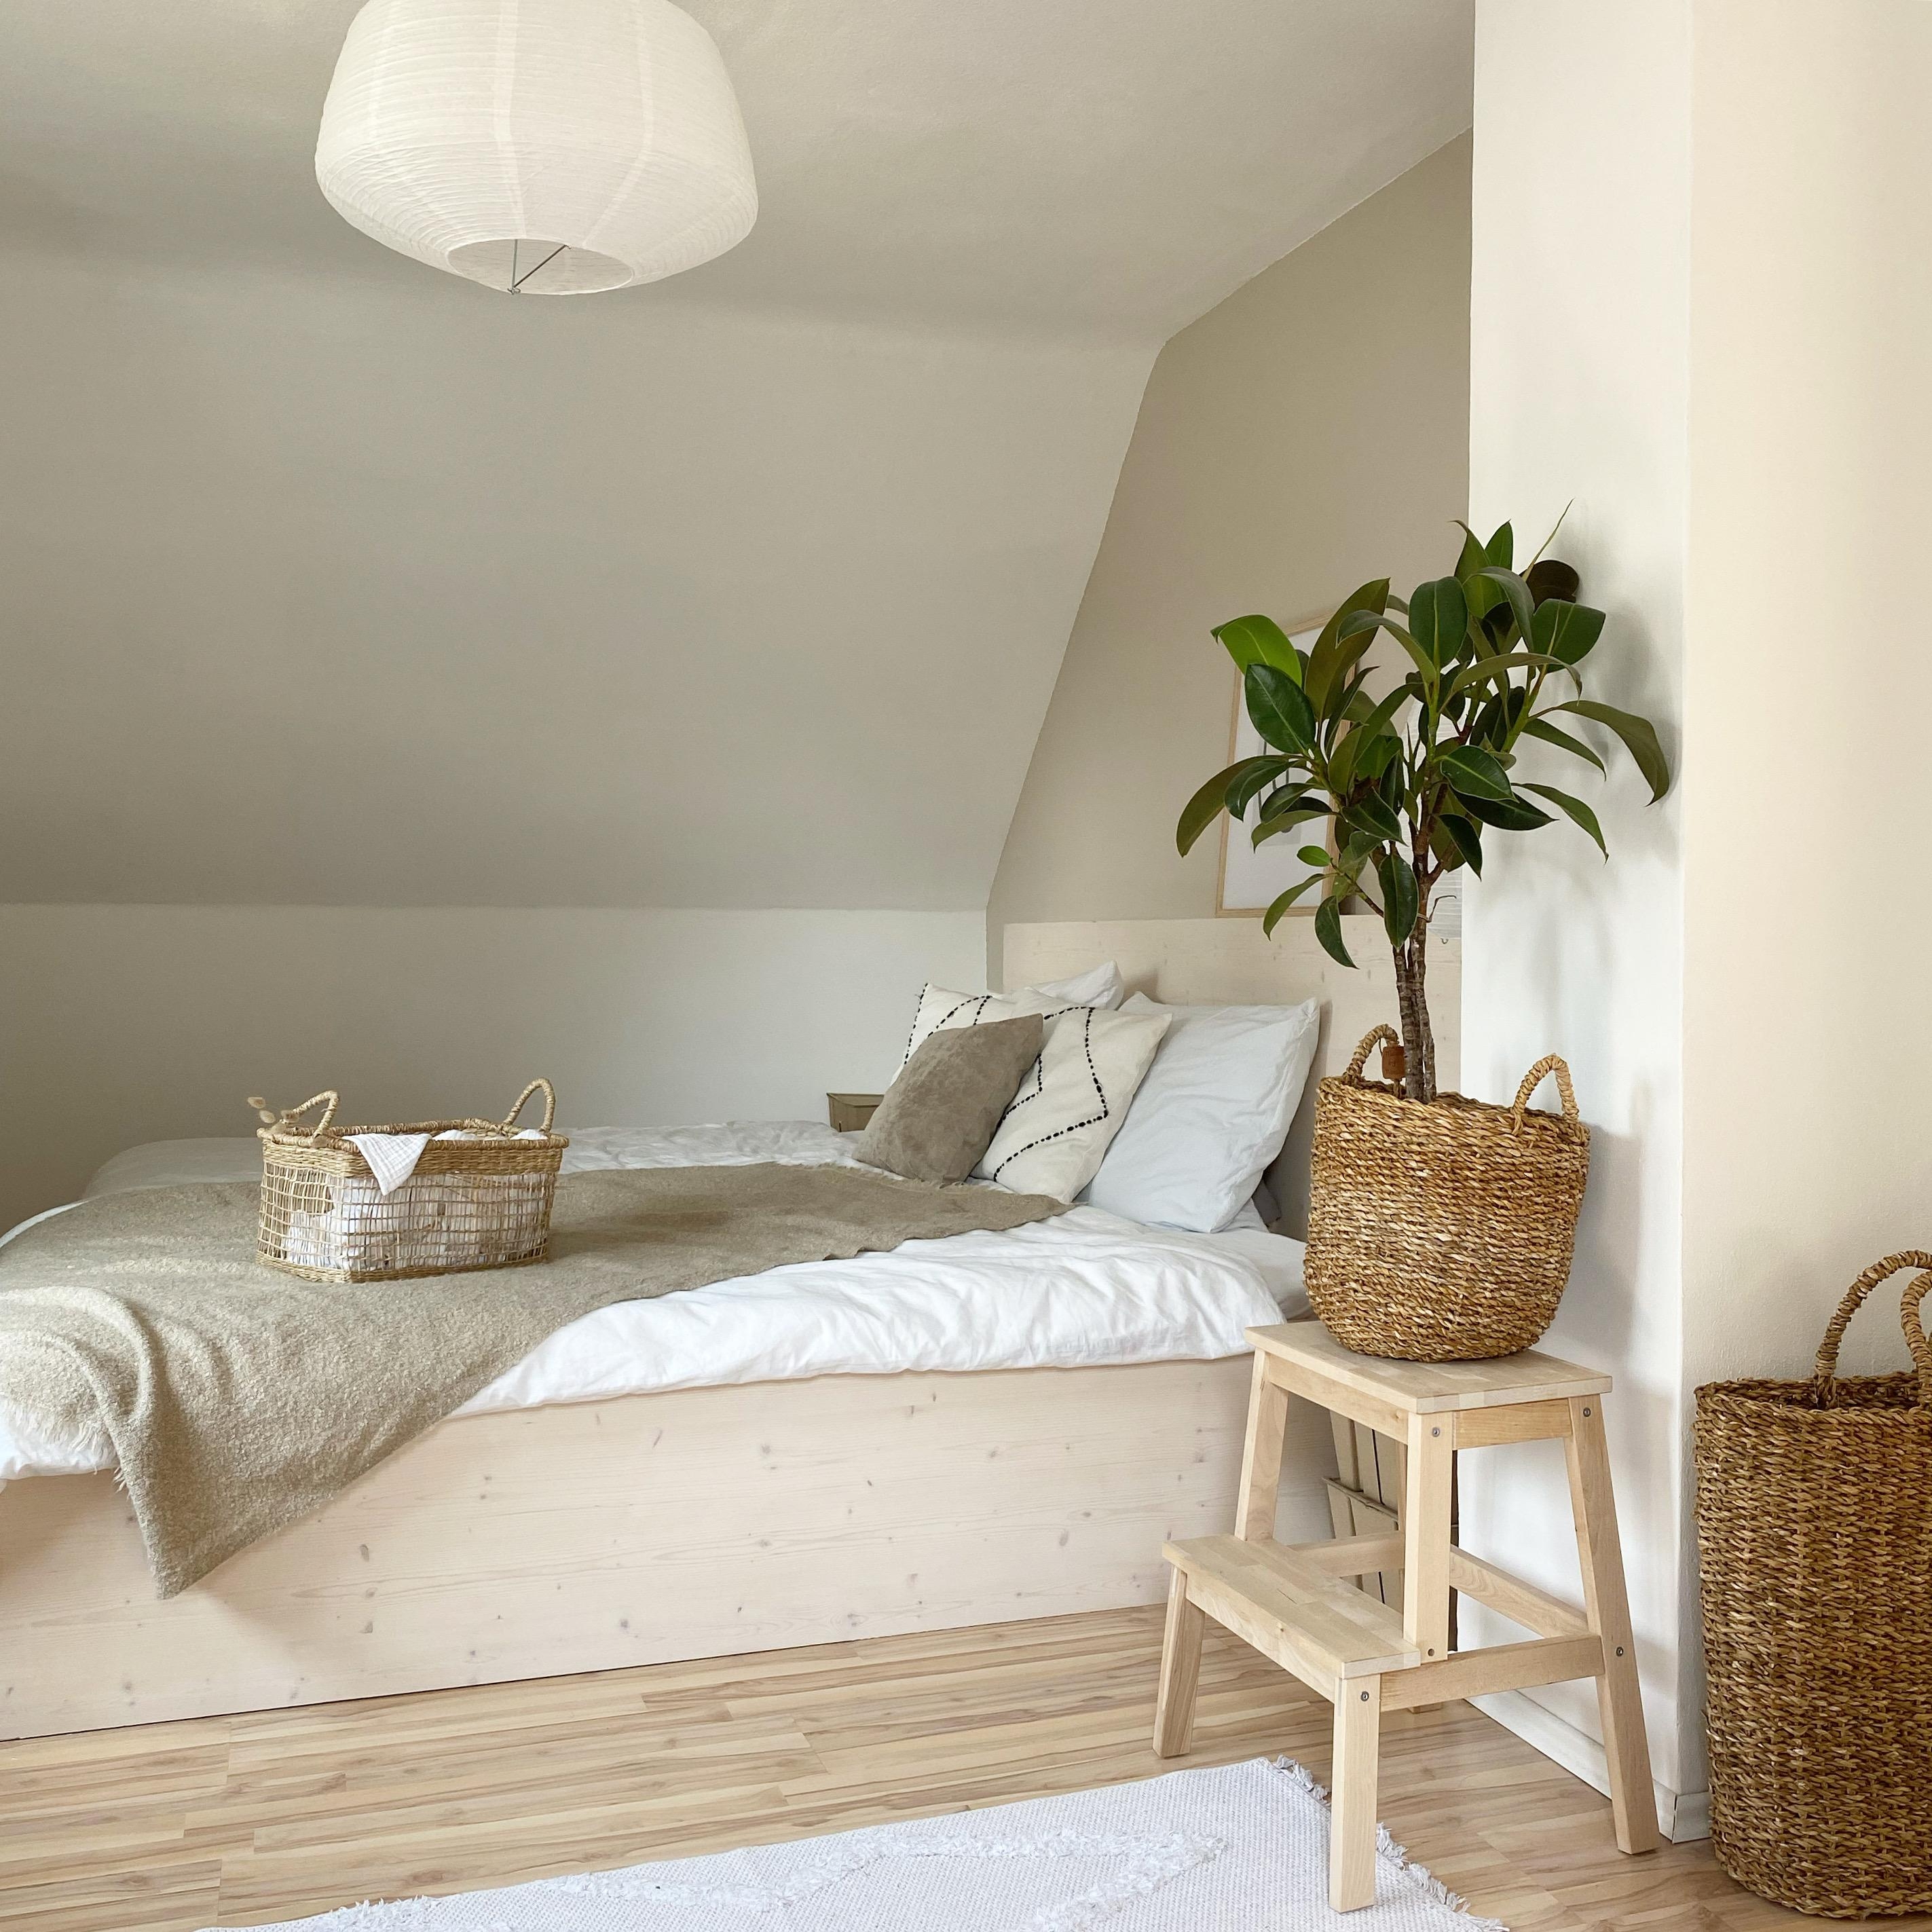 Was gibt’s schöneres als ein frisch bezogenes Bett? #schlafzimmer #cozy #bedroom